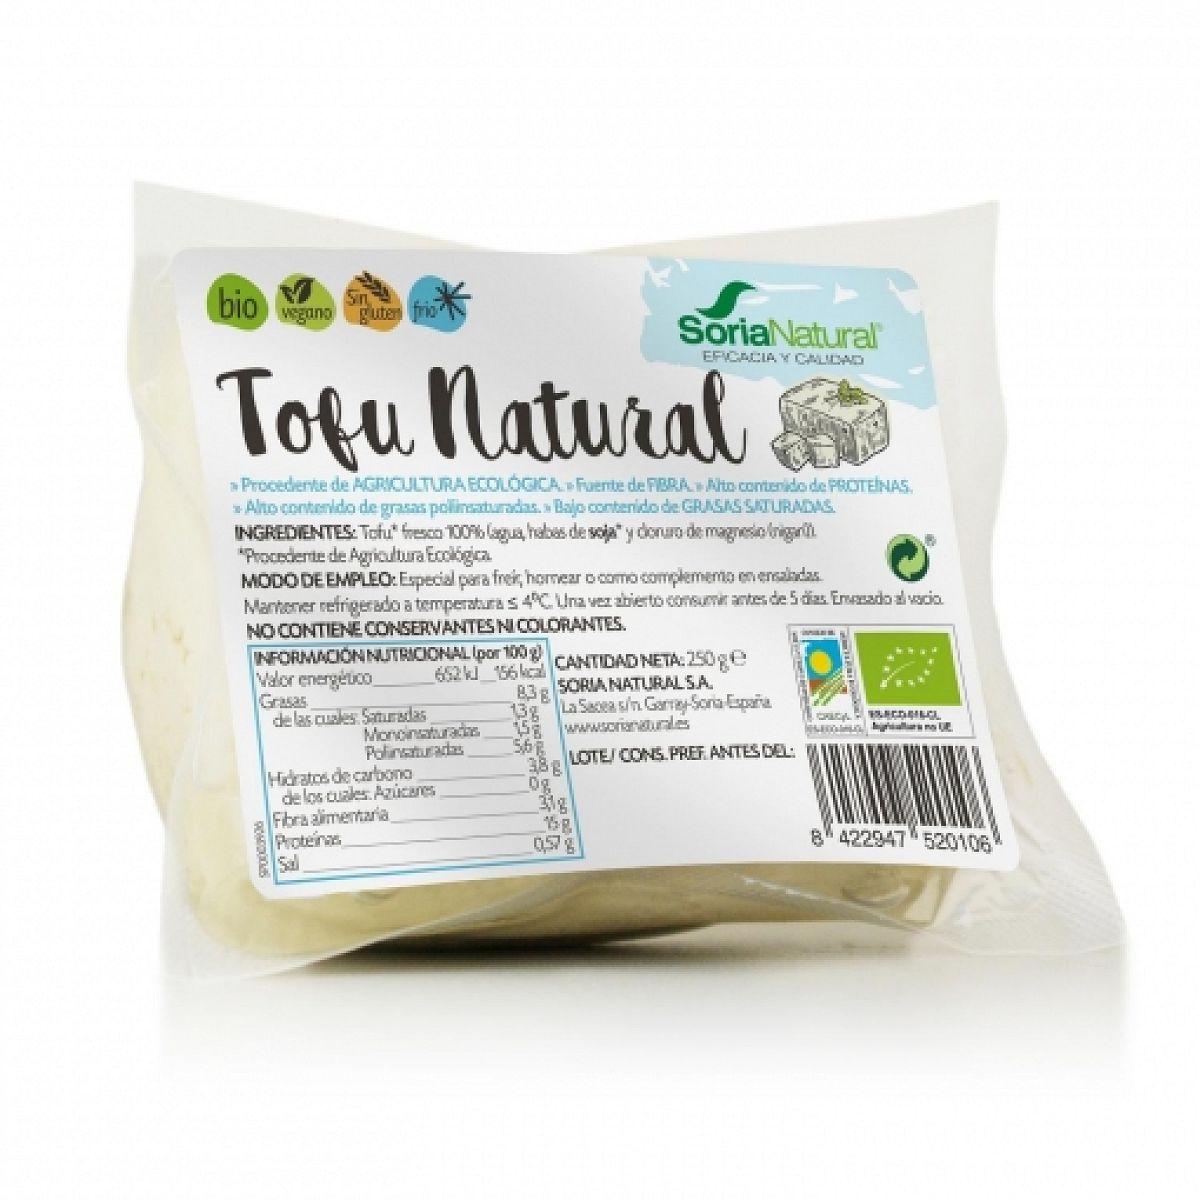 Soria natural - Tofu Natural  250gr